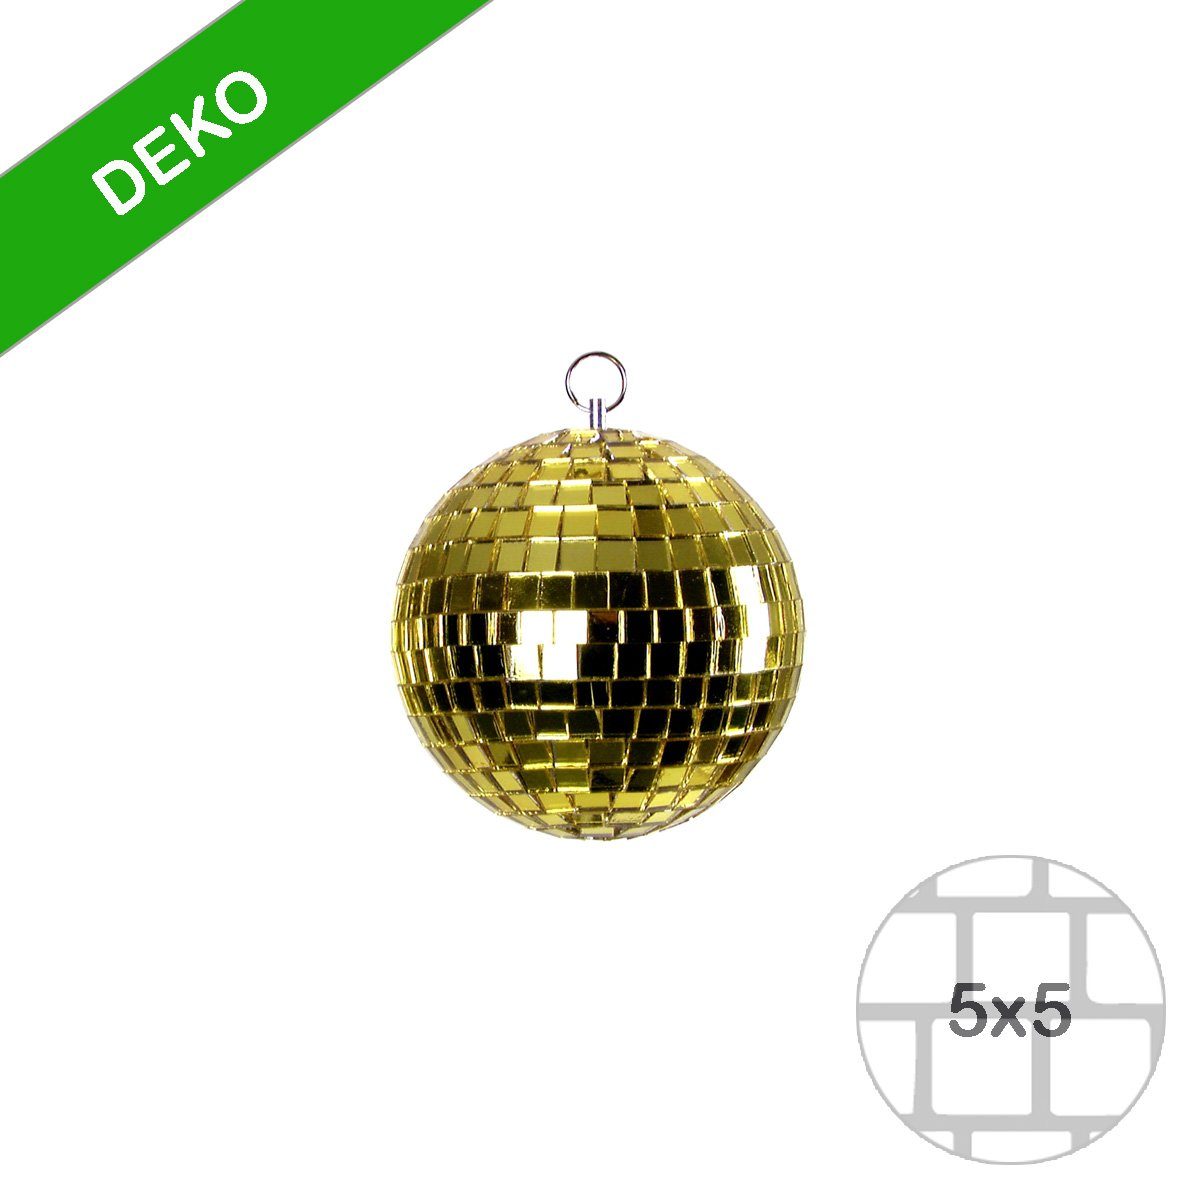 SATISFIRE gold Party Spiegelkugel Mini Discokugel 5cm Deko Disko coole Discolicht